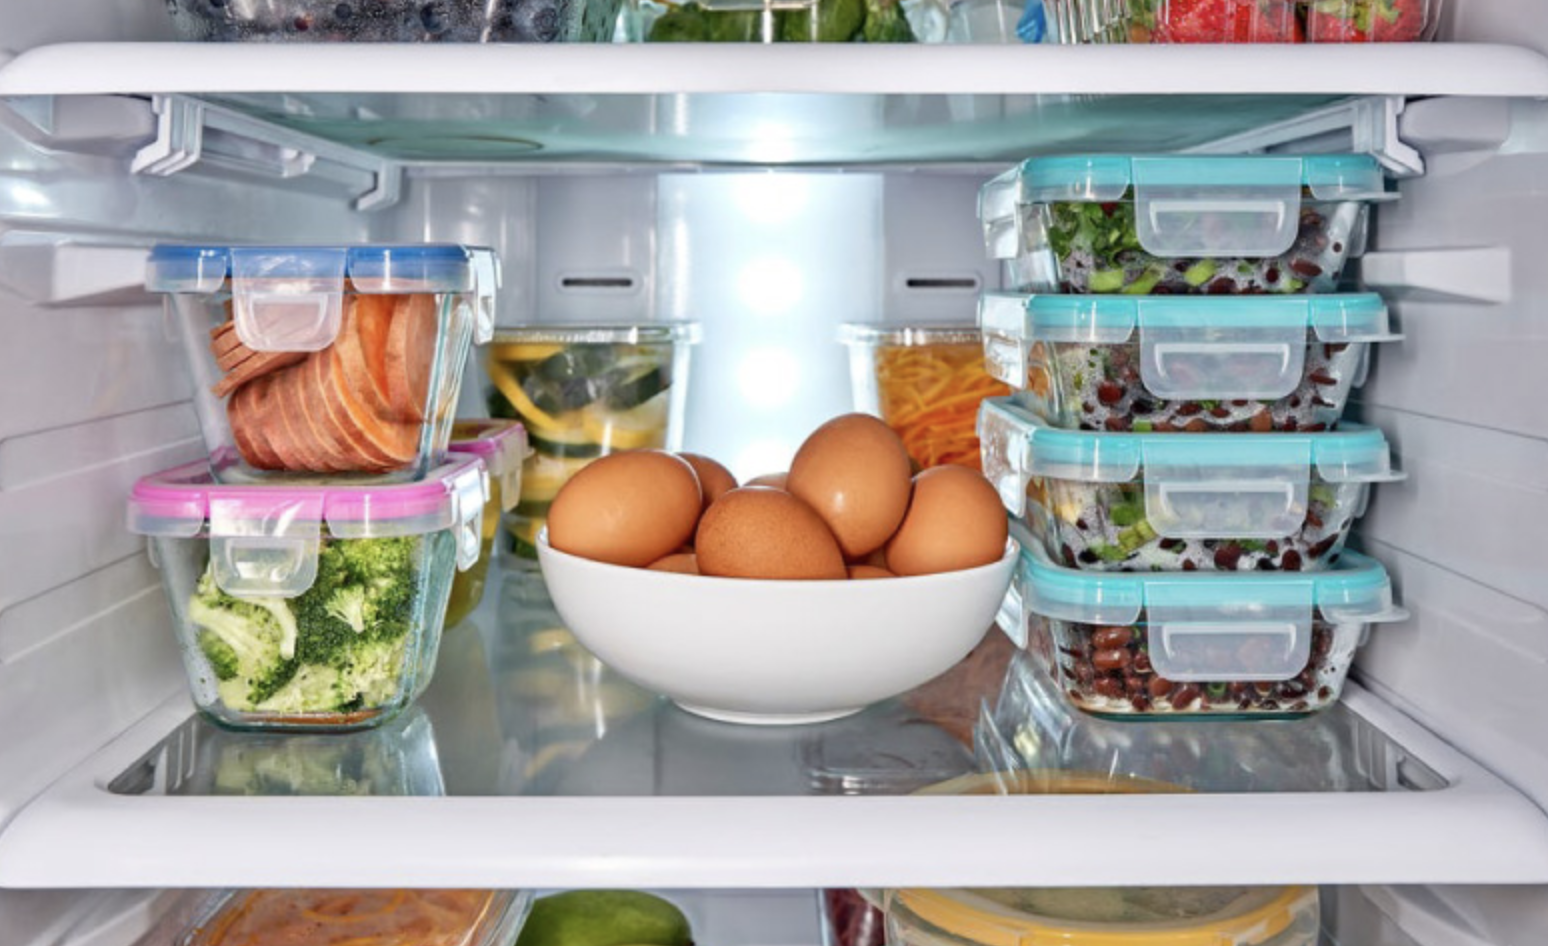 Можно хранить в холодильнике заварное. Хранение в холодильнике. Холодильник с продуктами. Хранение продуктов в холодильнике. Проддуктыв холодильнике.